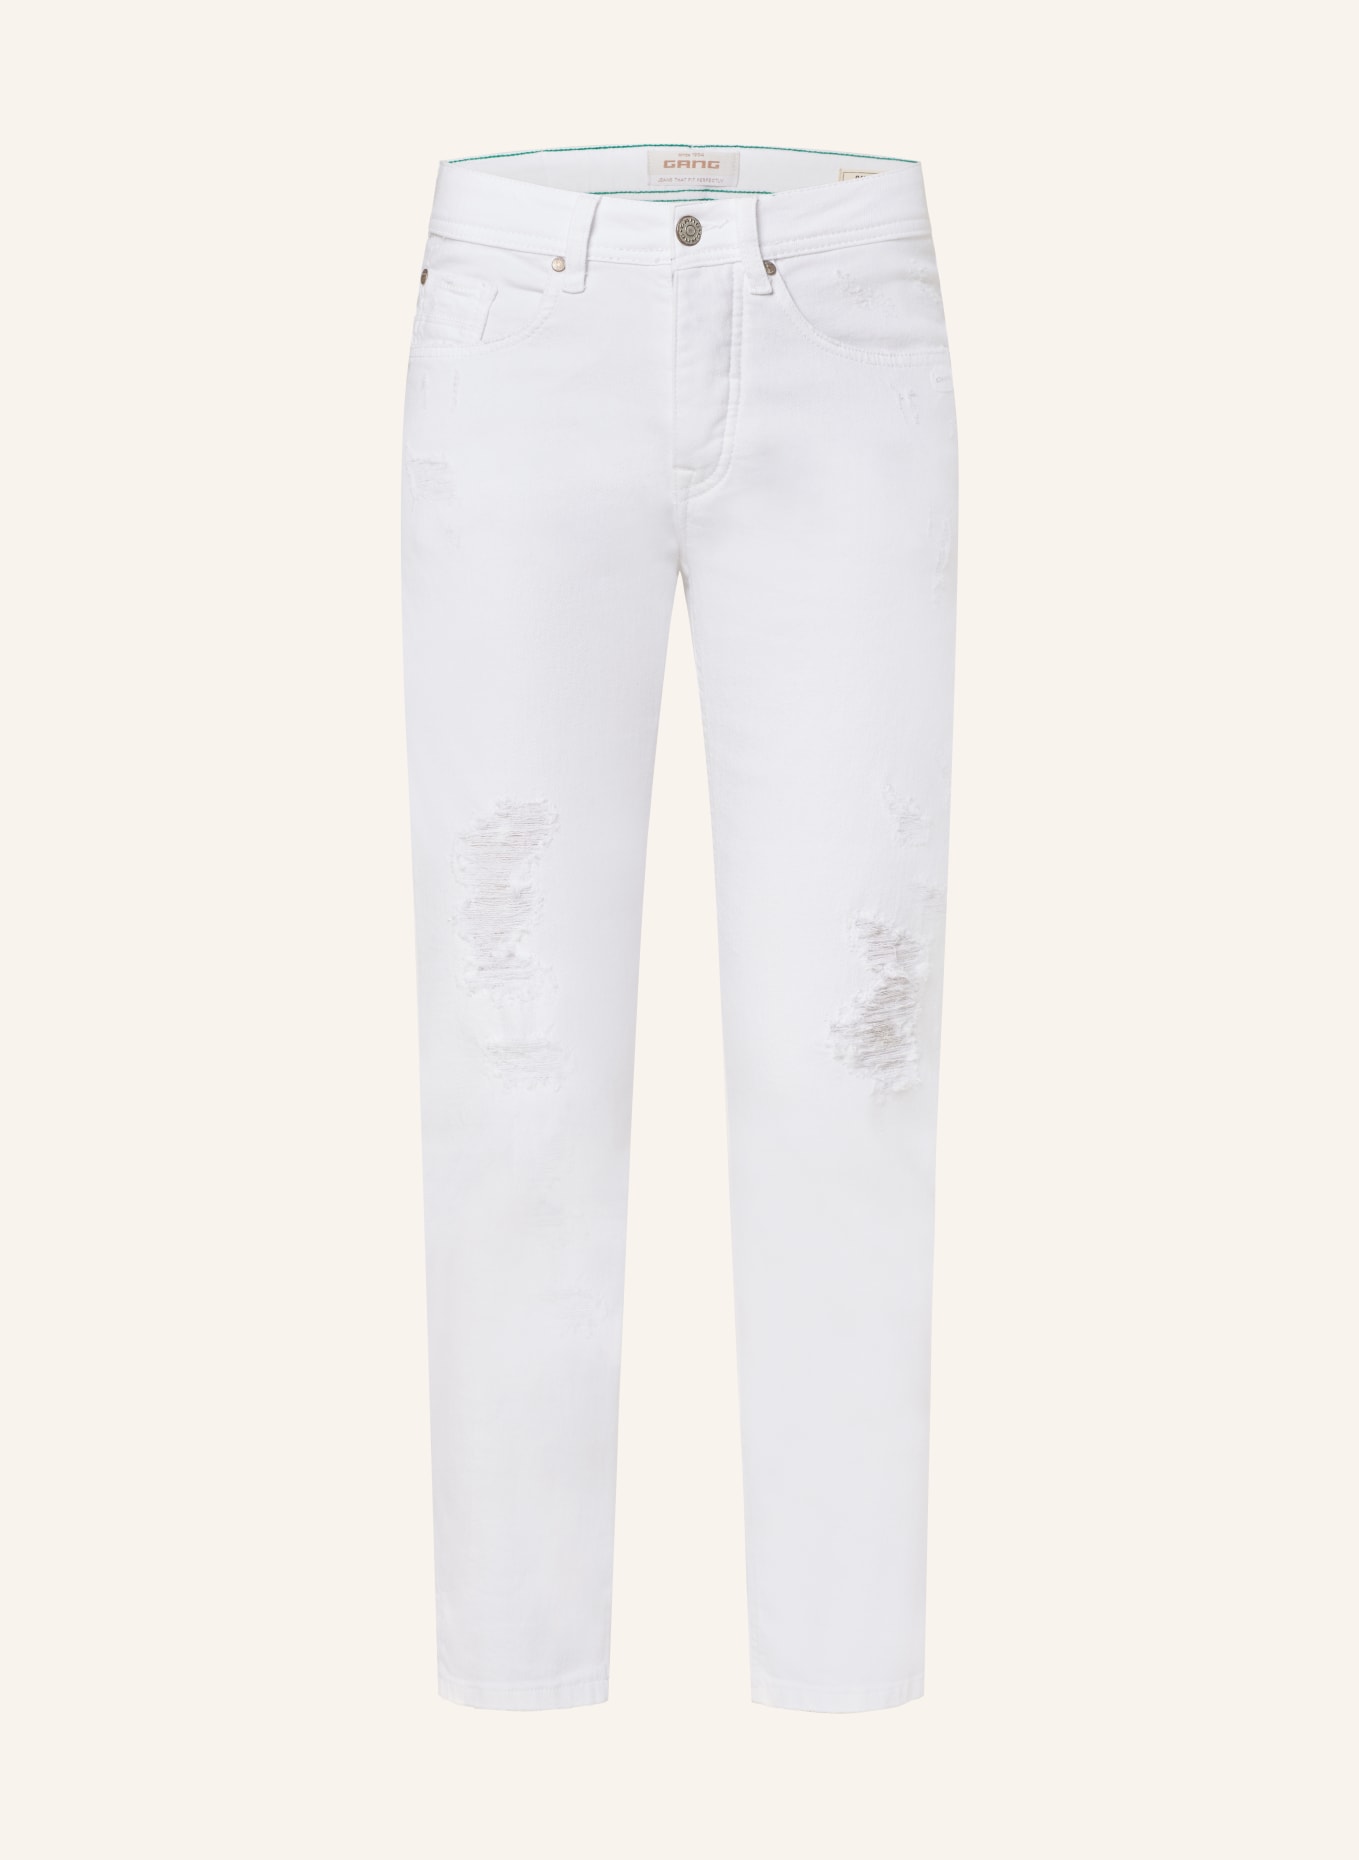 GANG 7/8-Jeans NICA, Farbe: 7107 white destoyed (Bild 1)